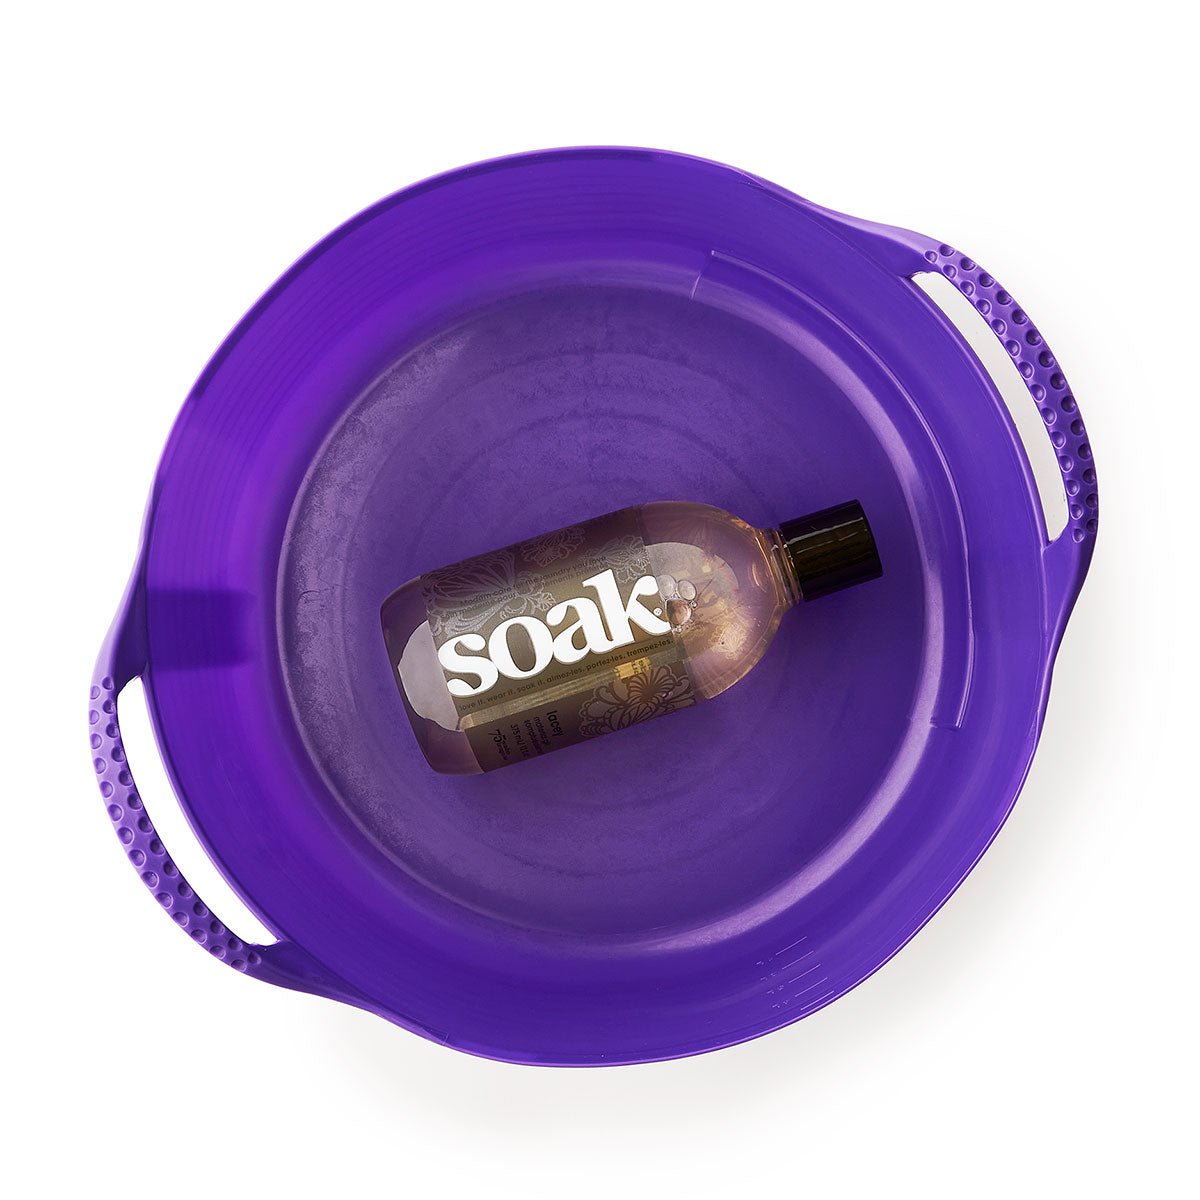 SOAK Mini Basin - My Filosophy